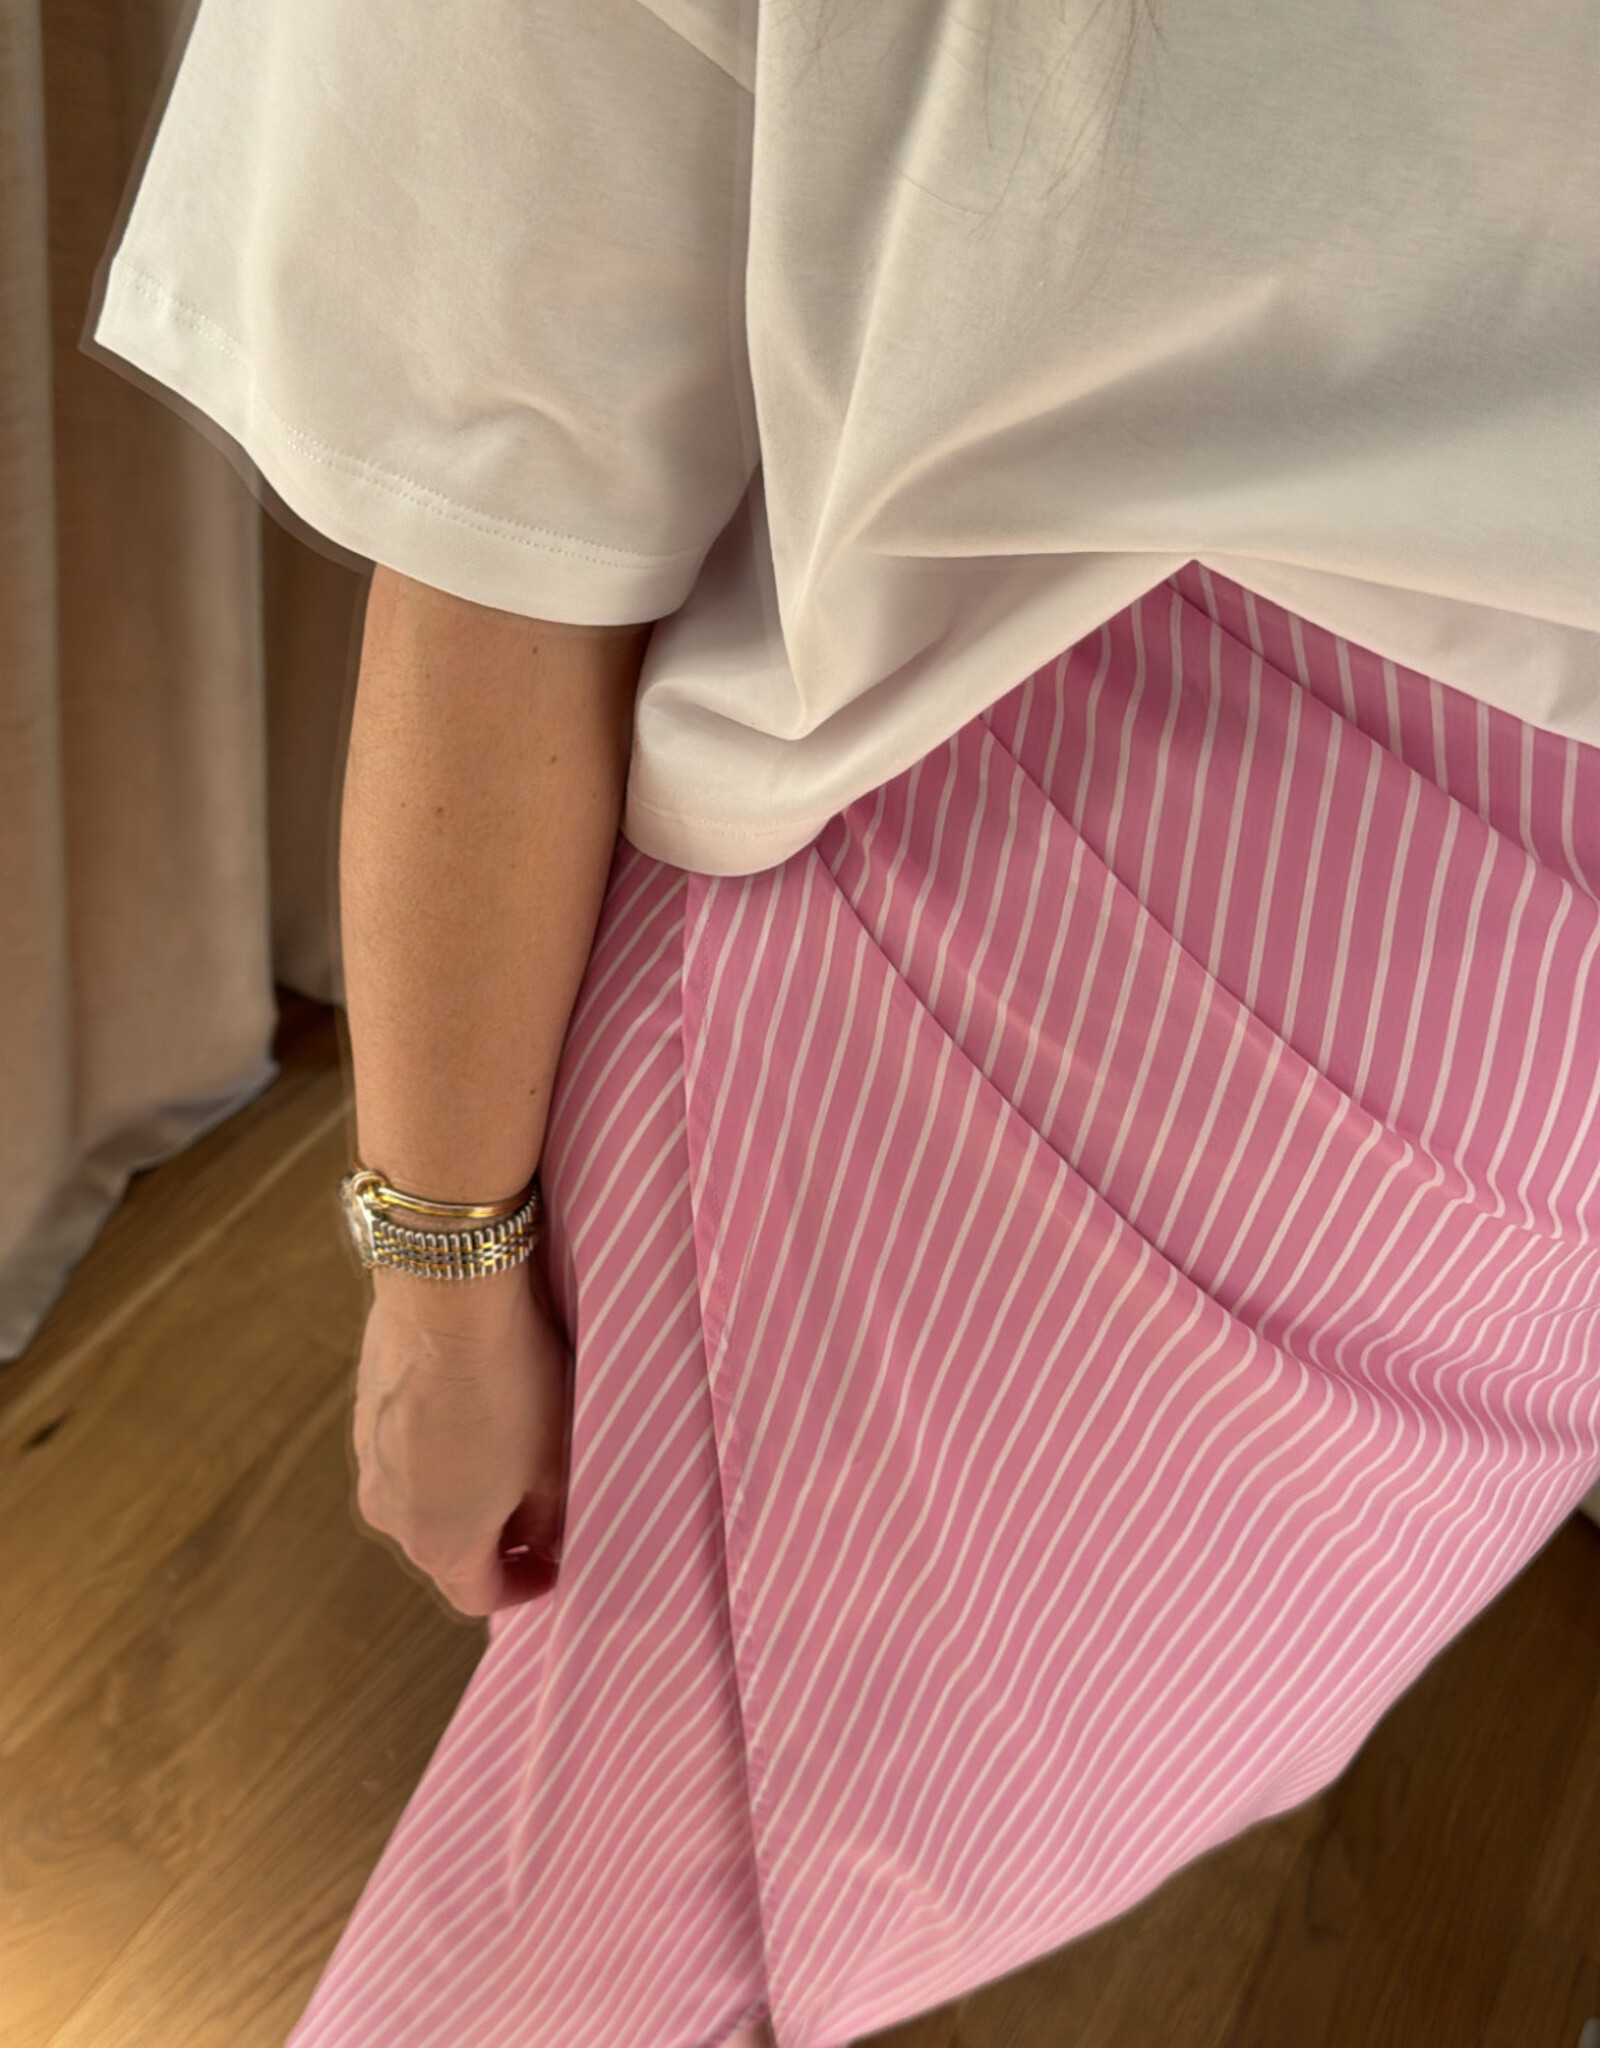 Les Soeurs Ervin Skirt Pink Striped